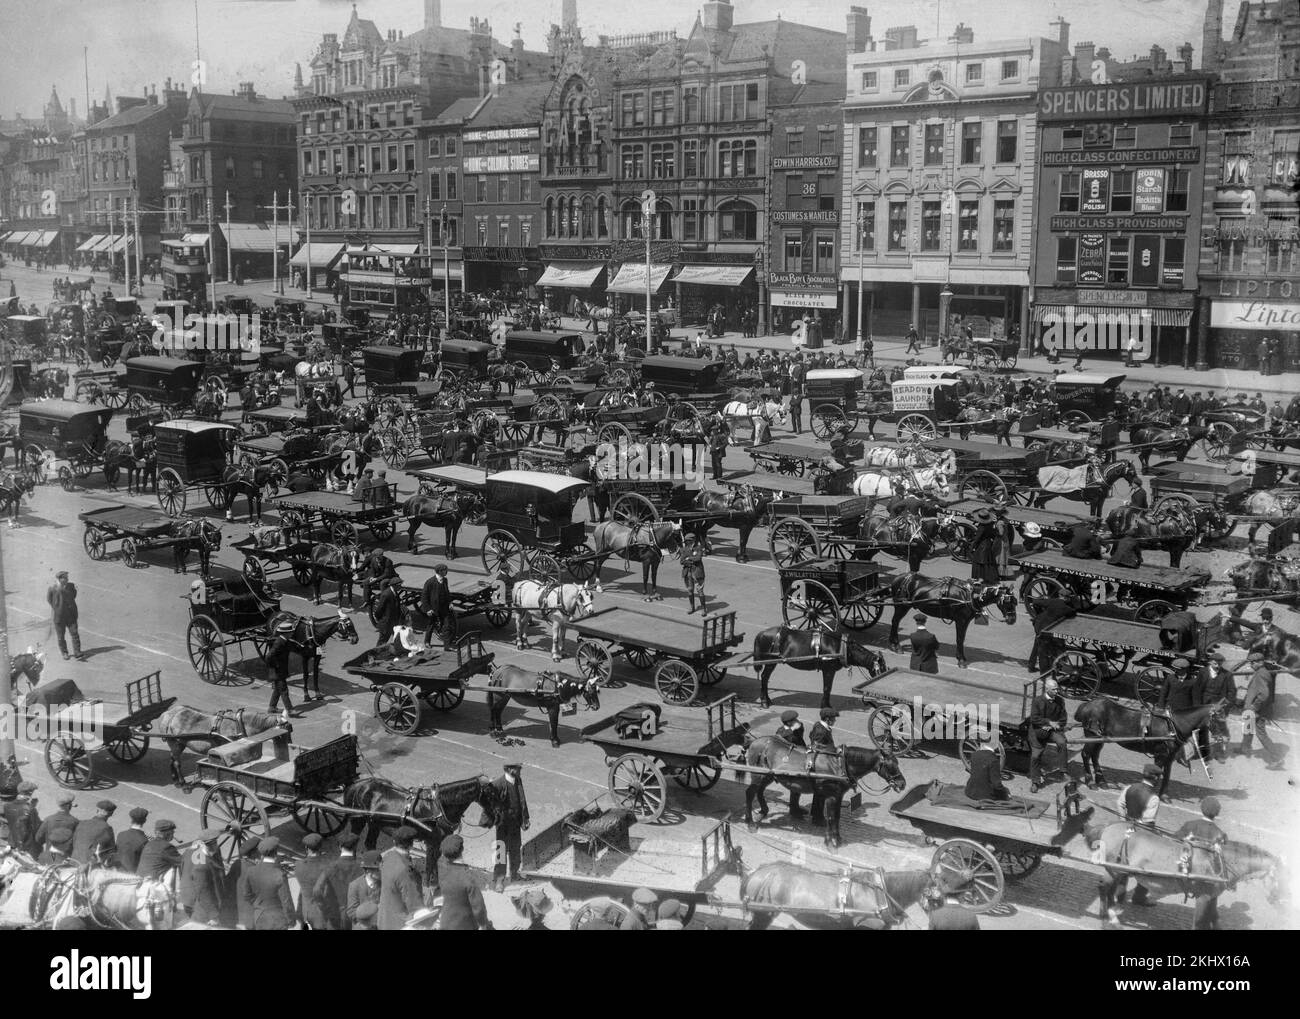 Una fotografia in bianco e nero tardo vittoriana che mostra il centro di Nottingham in Inghilterra, con molte carrozze trainate da cavalli e carrelli per le strade. I nomi di molti negozi sono visibili. Foto Stock